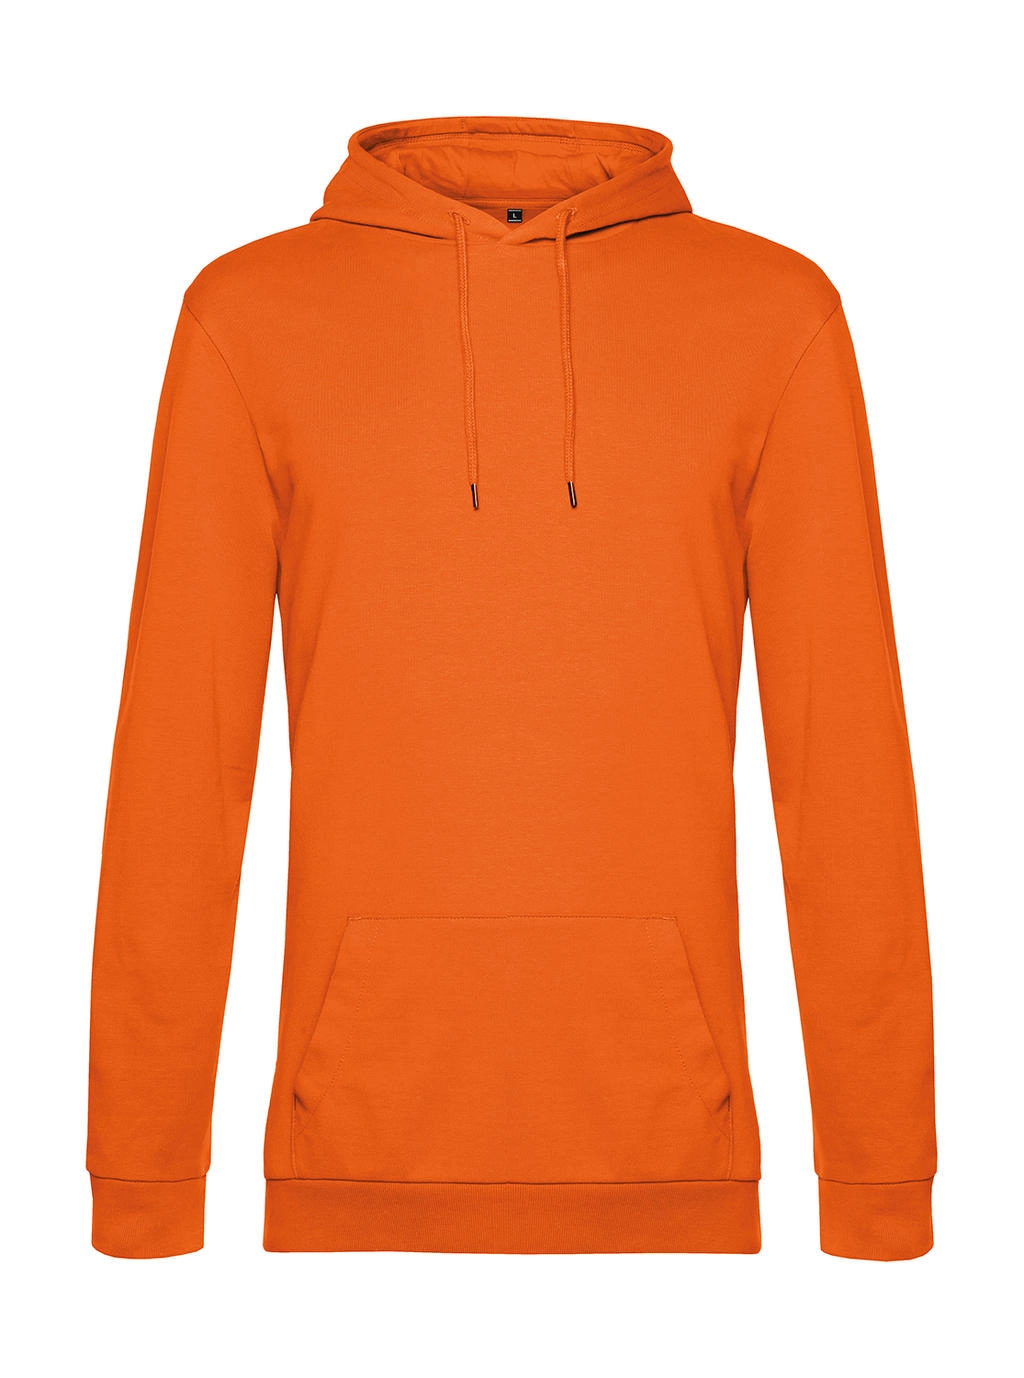 #Hoodie French Terry zum Besticken und Bedrucken in der Farbe Pure Orange mit Ihren Logo, Schriftzug oder Motiv.